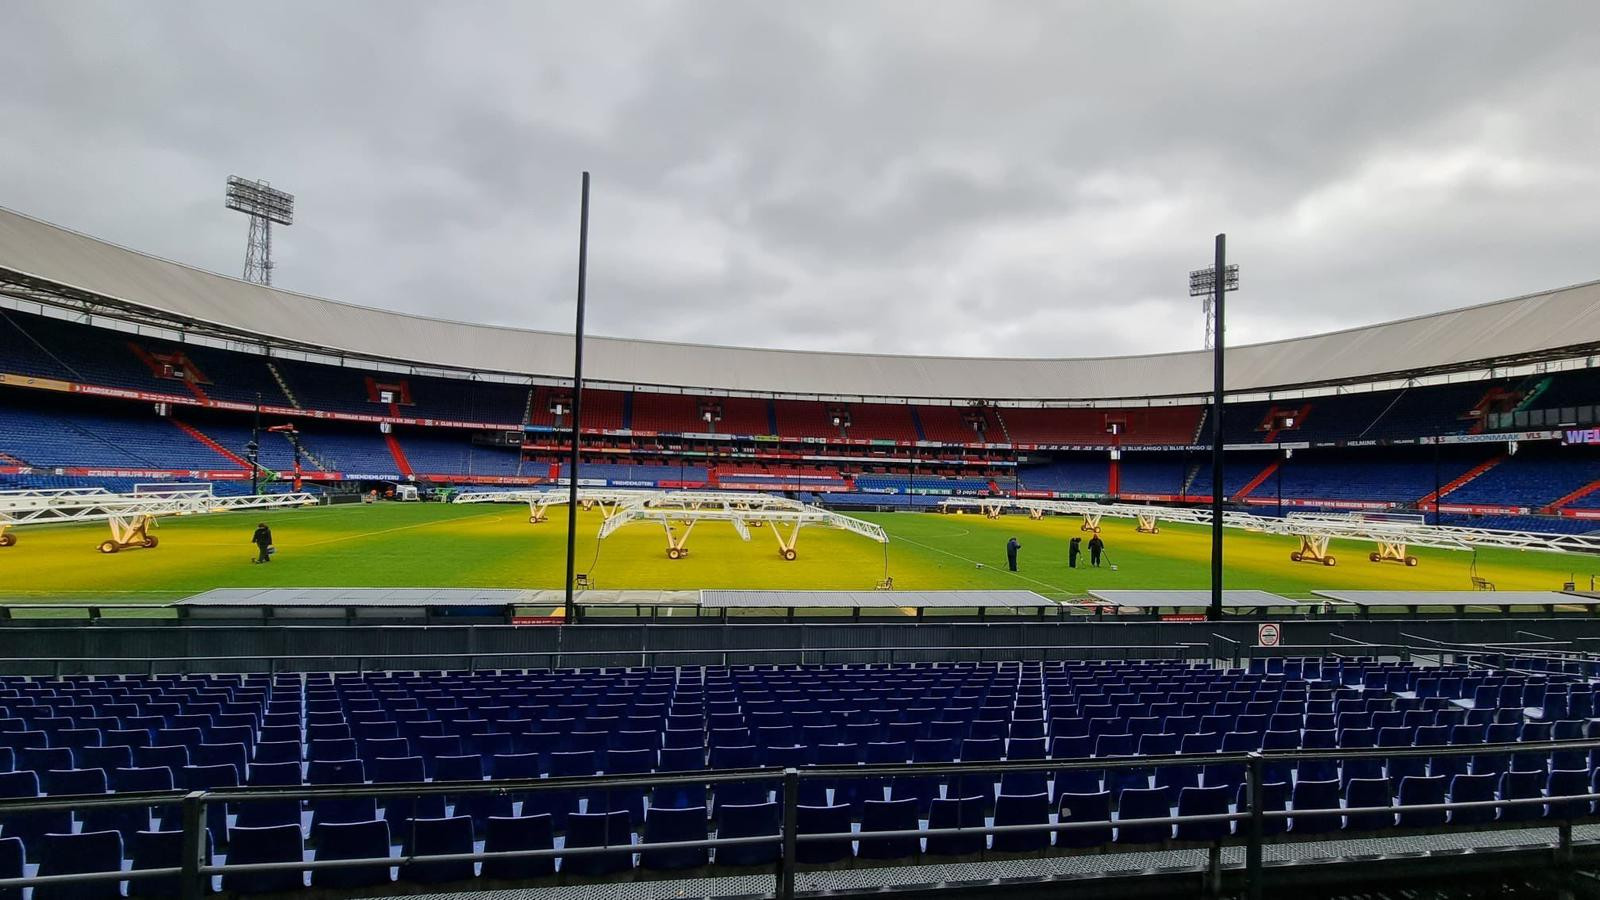 Géén netten voor de tv-camera's bij Feyenoord-Celtic